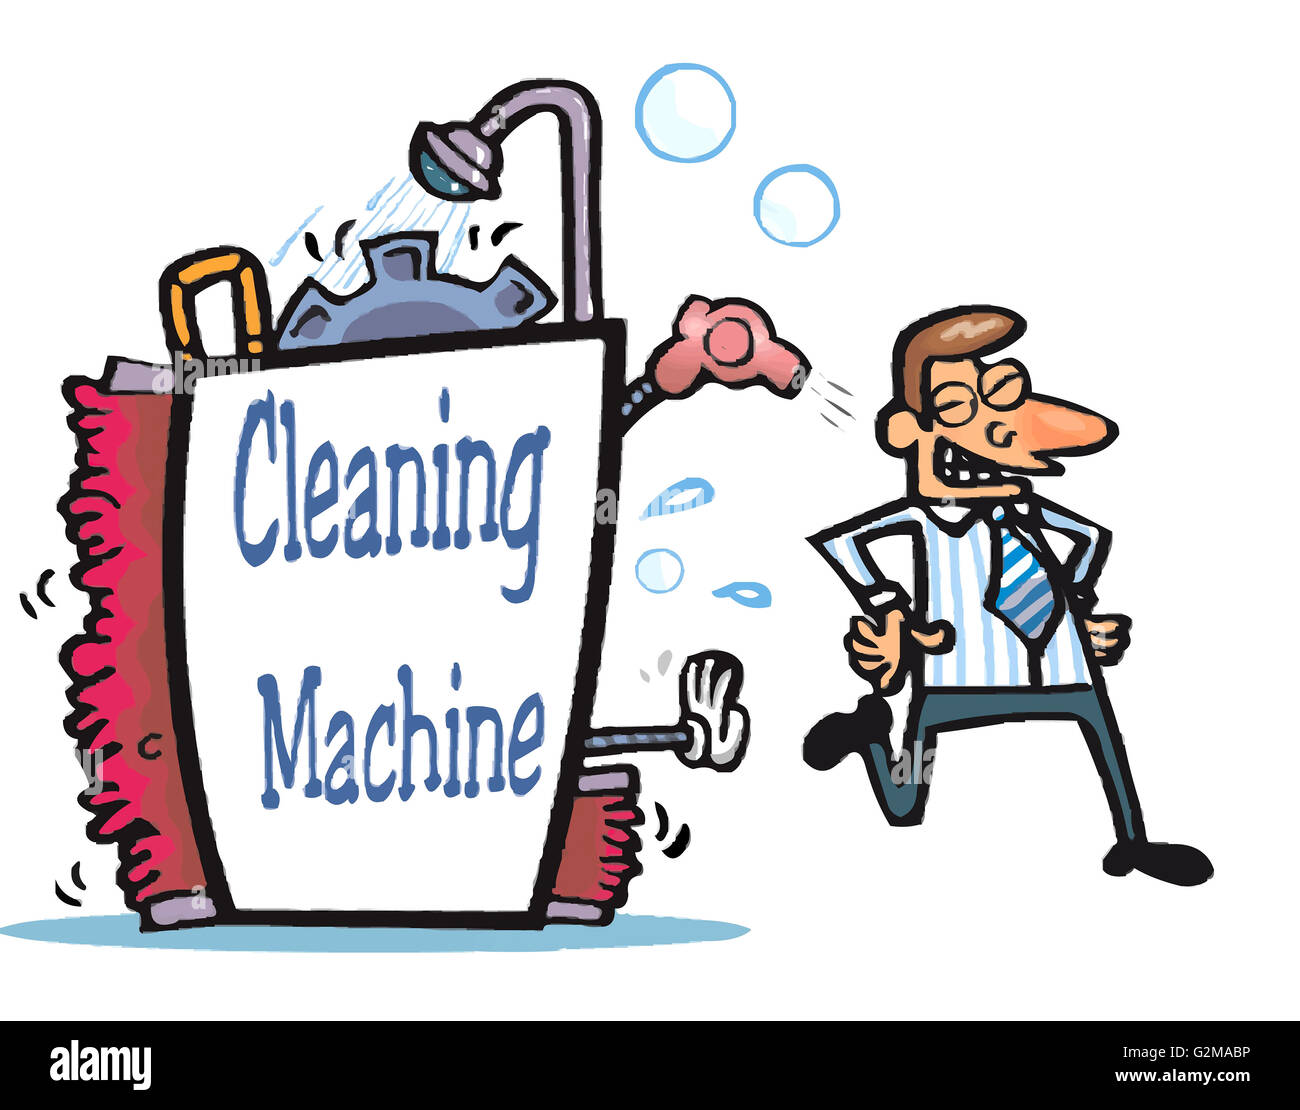 Homme marchant hors de la machine de nettoyage Banque D'Images